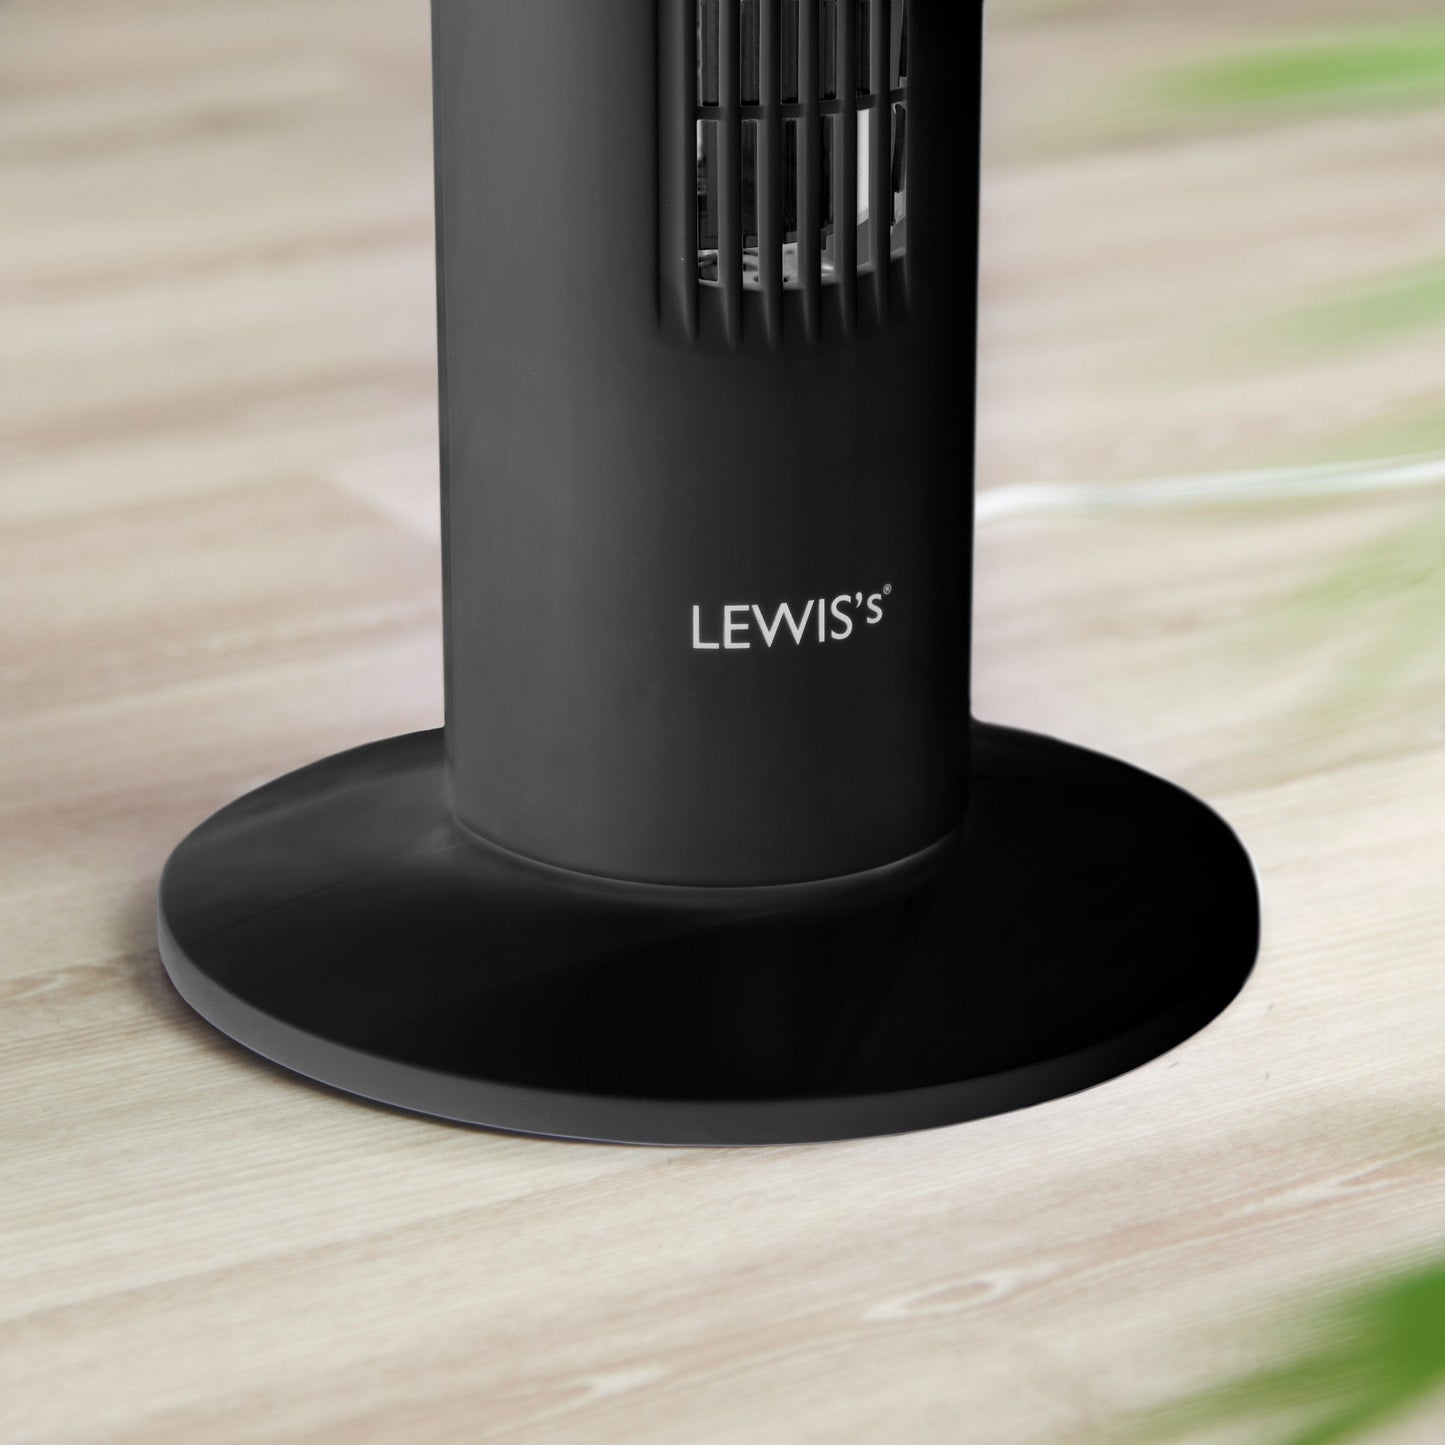 Lewis's 32 Inch Tower Fan - Black